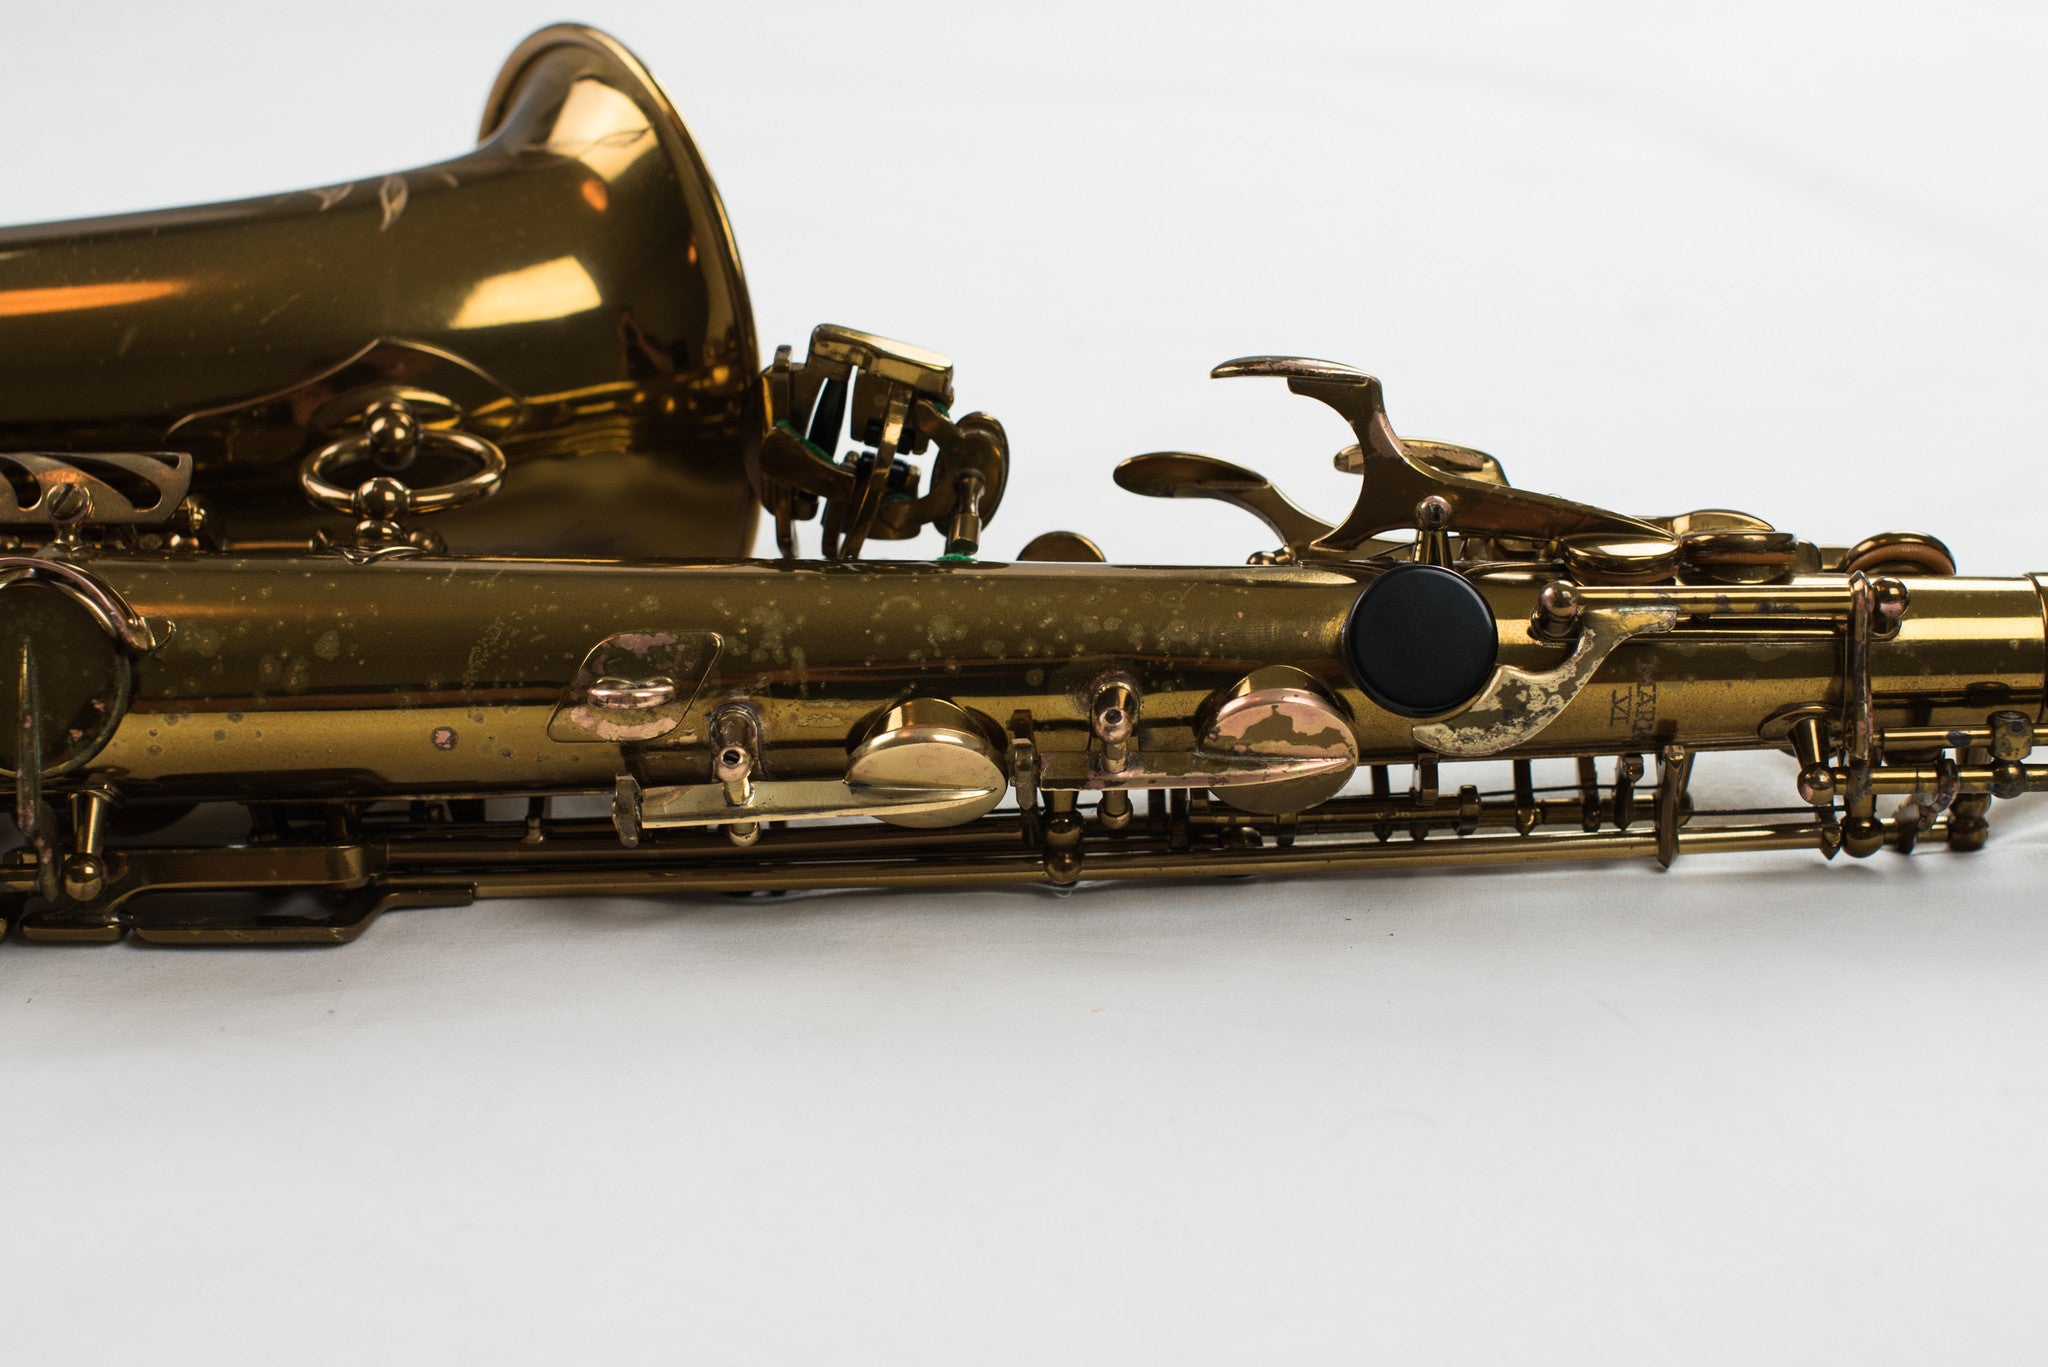 1954 Selmer Mark VI Alto Saxophone 98% ORIGINAL LACQUER, WOW!